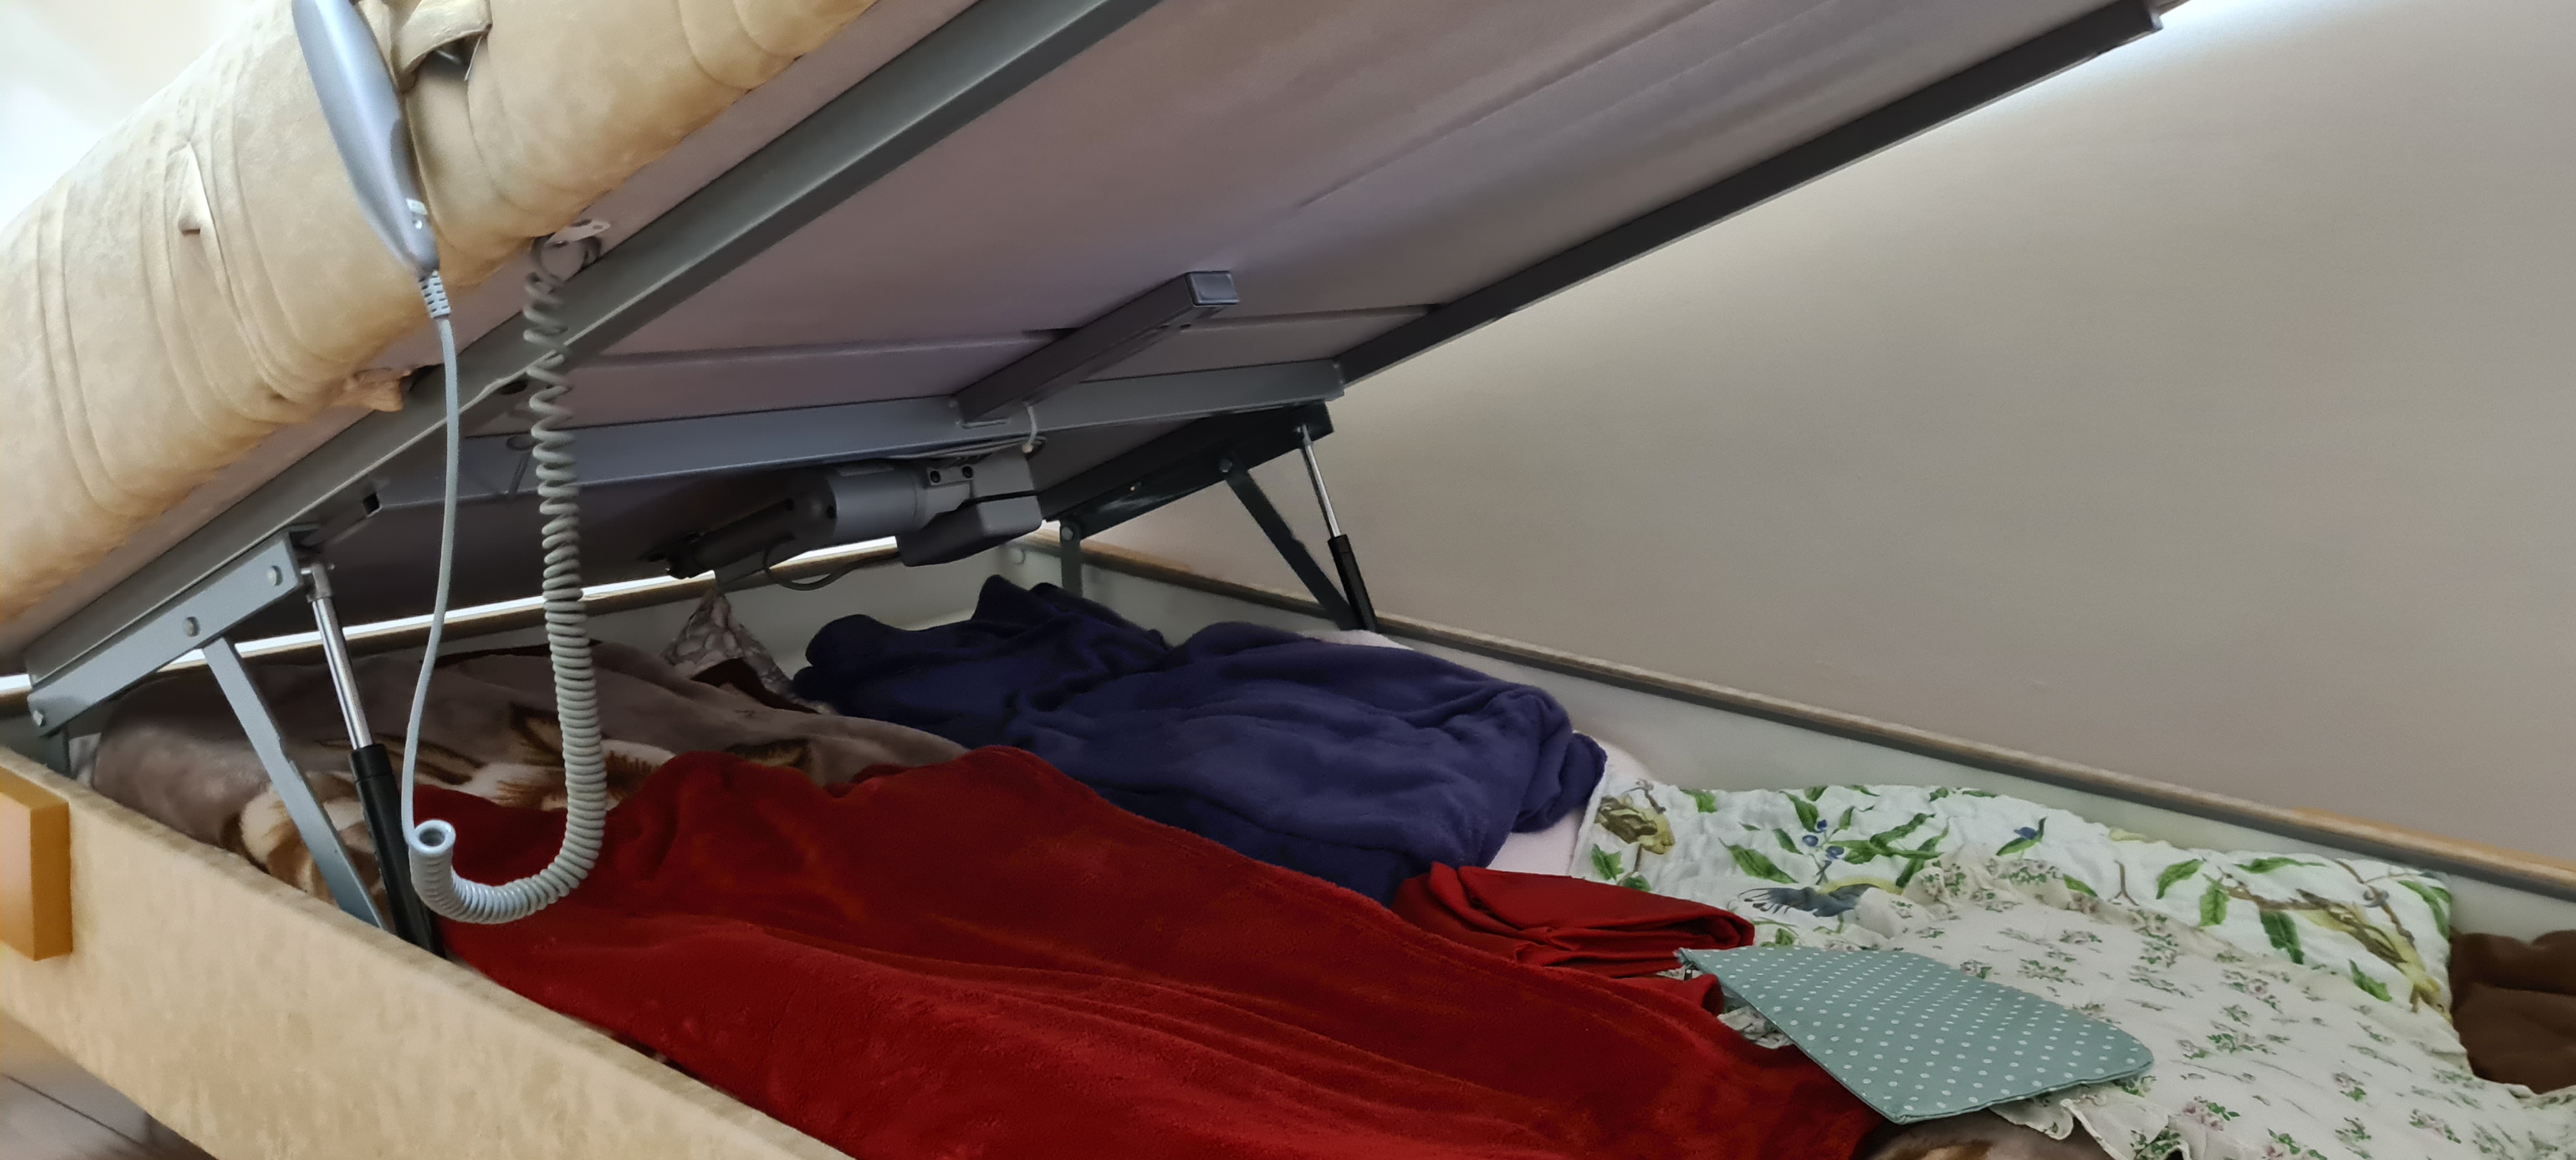 תמונה 8 ,מיטה וחצי ספפה במצב נדיר למכירה בנהריה ריהוט  מיטות